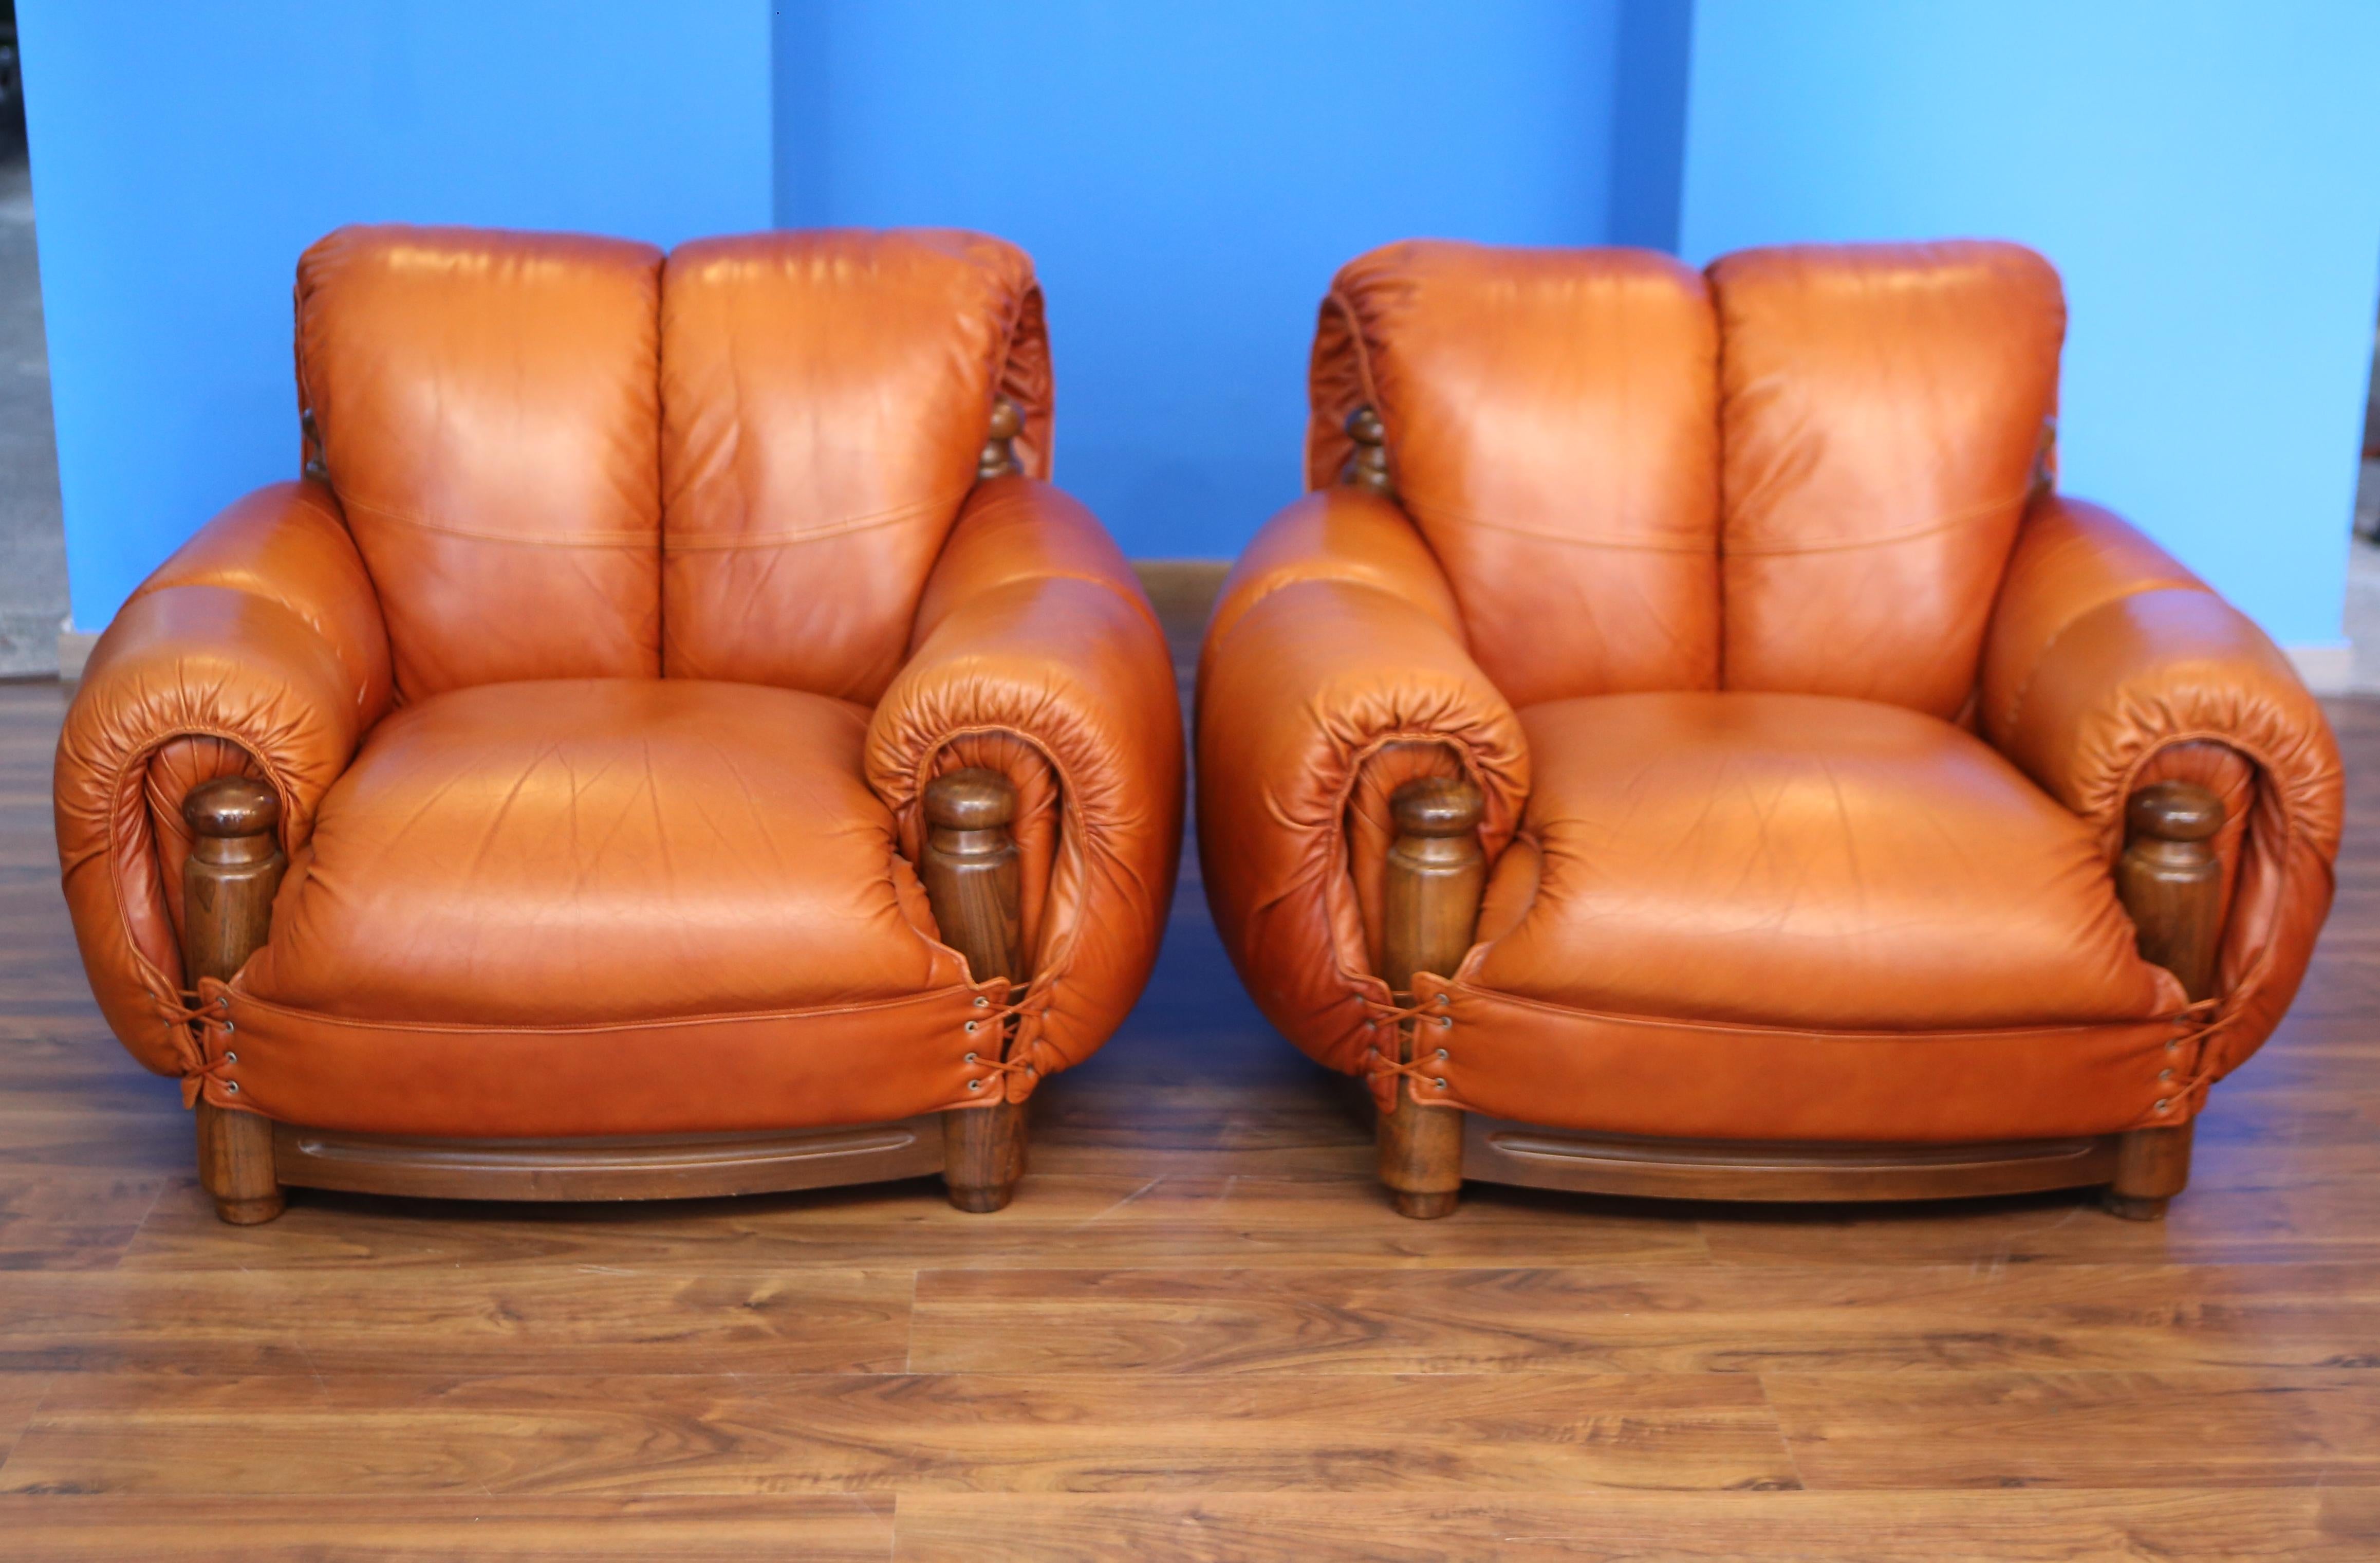 satz von zwei ledersesseln cognacfarben im stil von sergio rodriguez.
Diese Sessel sind in außergewöhnlichem Zustand, das cognacfarbene Leder hat keine Mängel. Ideal für offene Umgebungen.